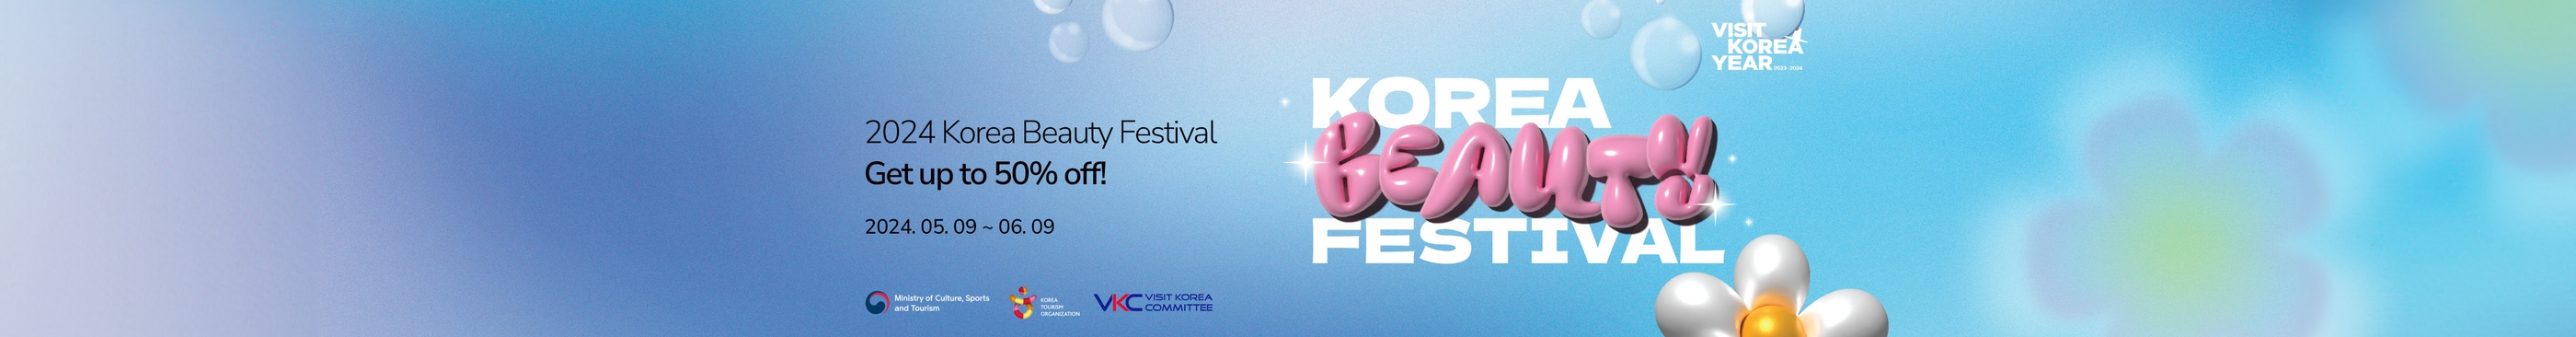 2024 Korea Beauty Festival